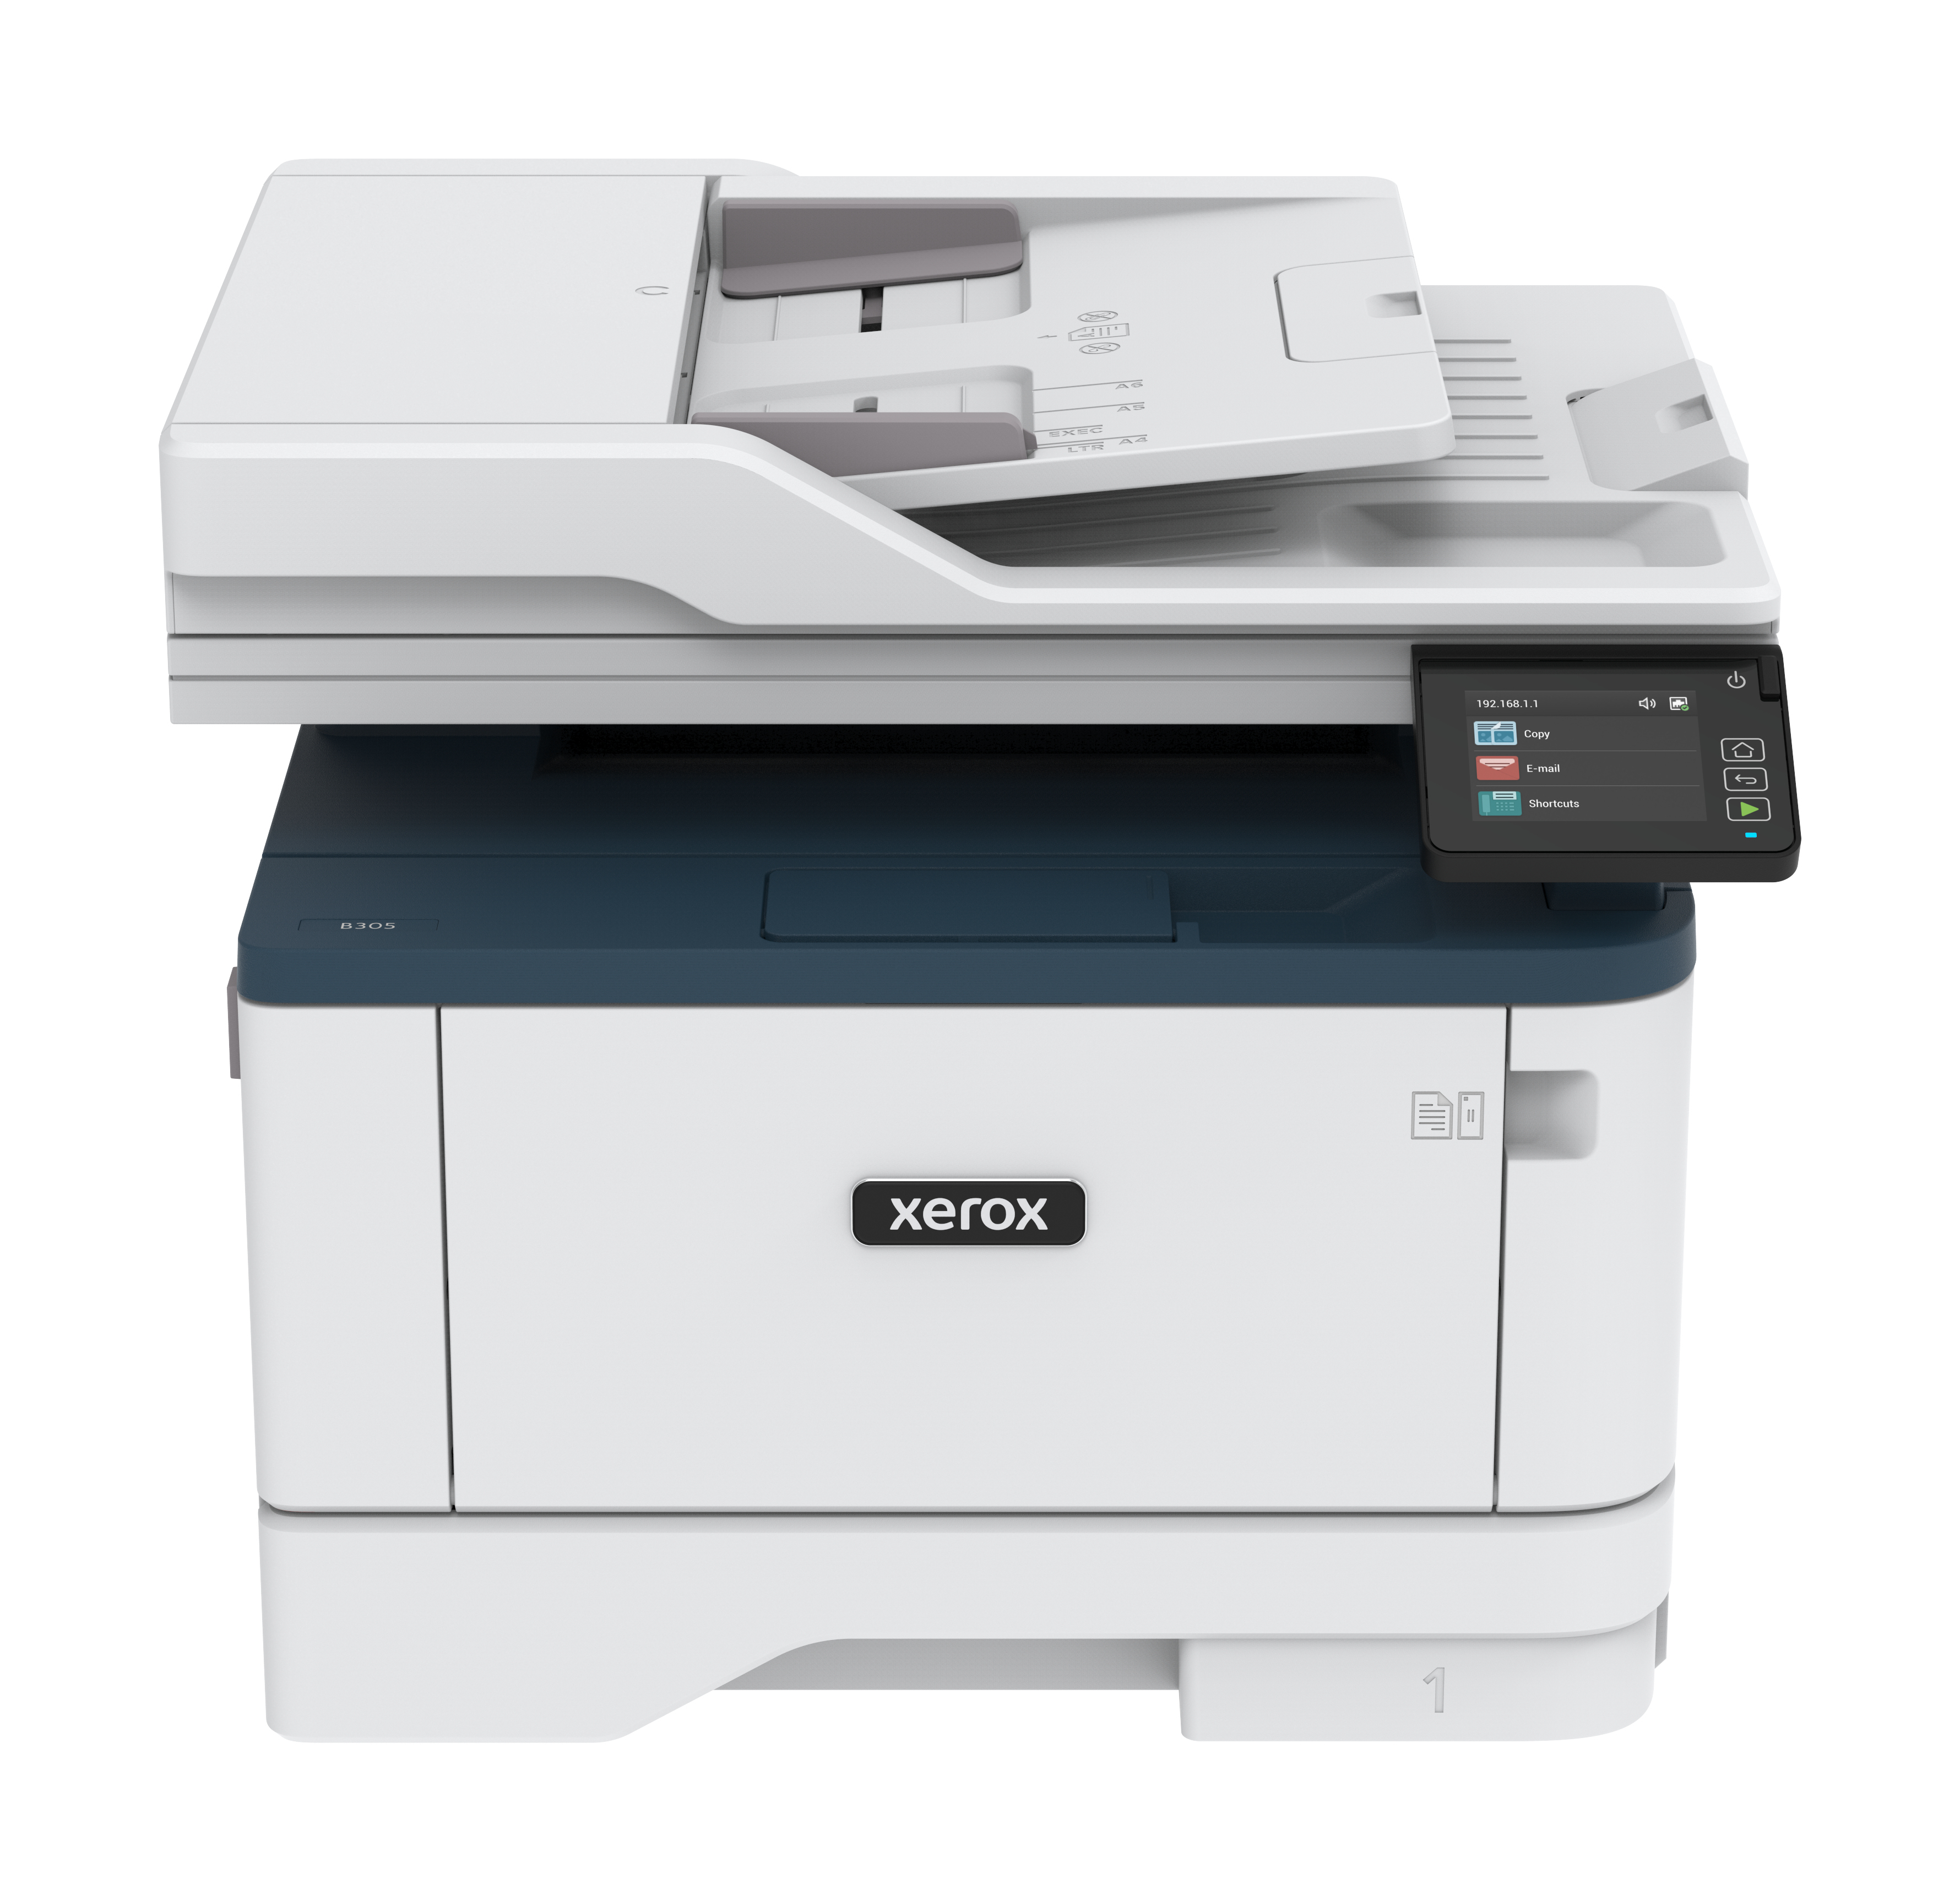 Xerox Xerox B305 A4 38 ppm draadloze dubbelzijdige printer PS3 PCL5e/6 2 laden totaal 350 vel